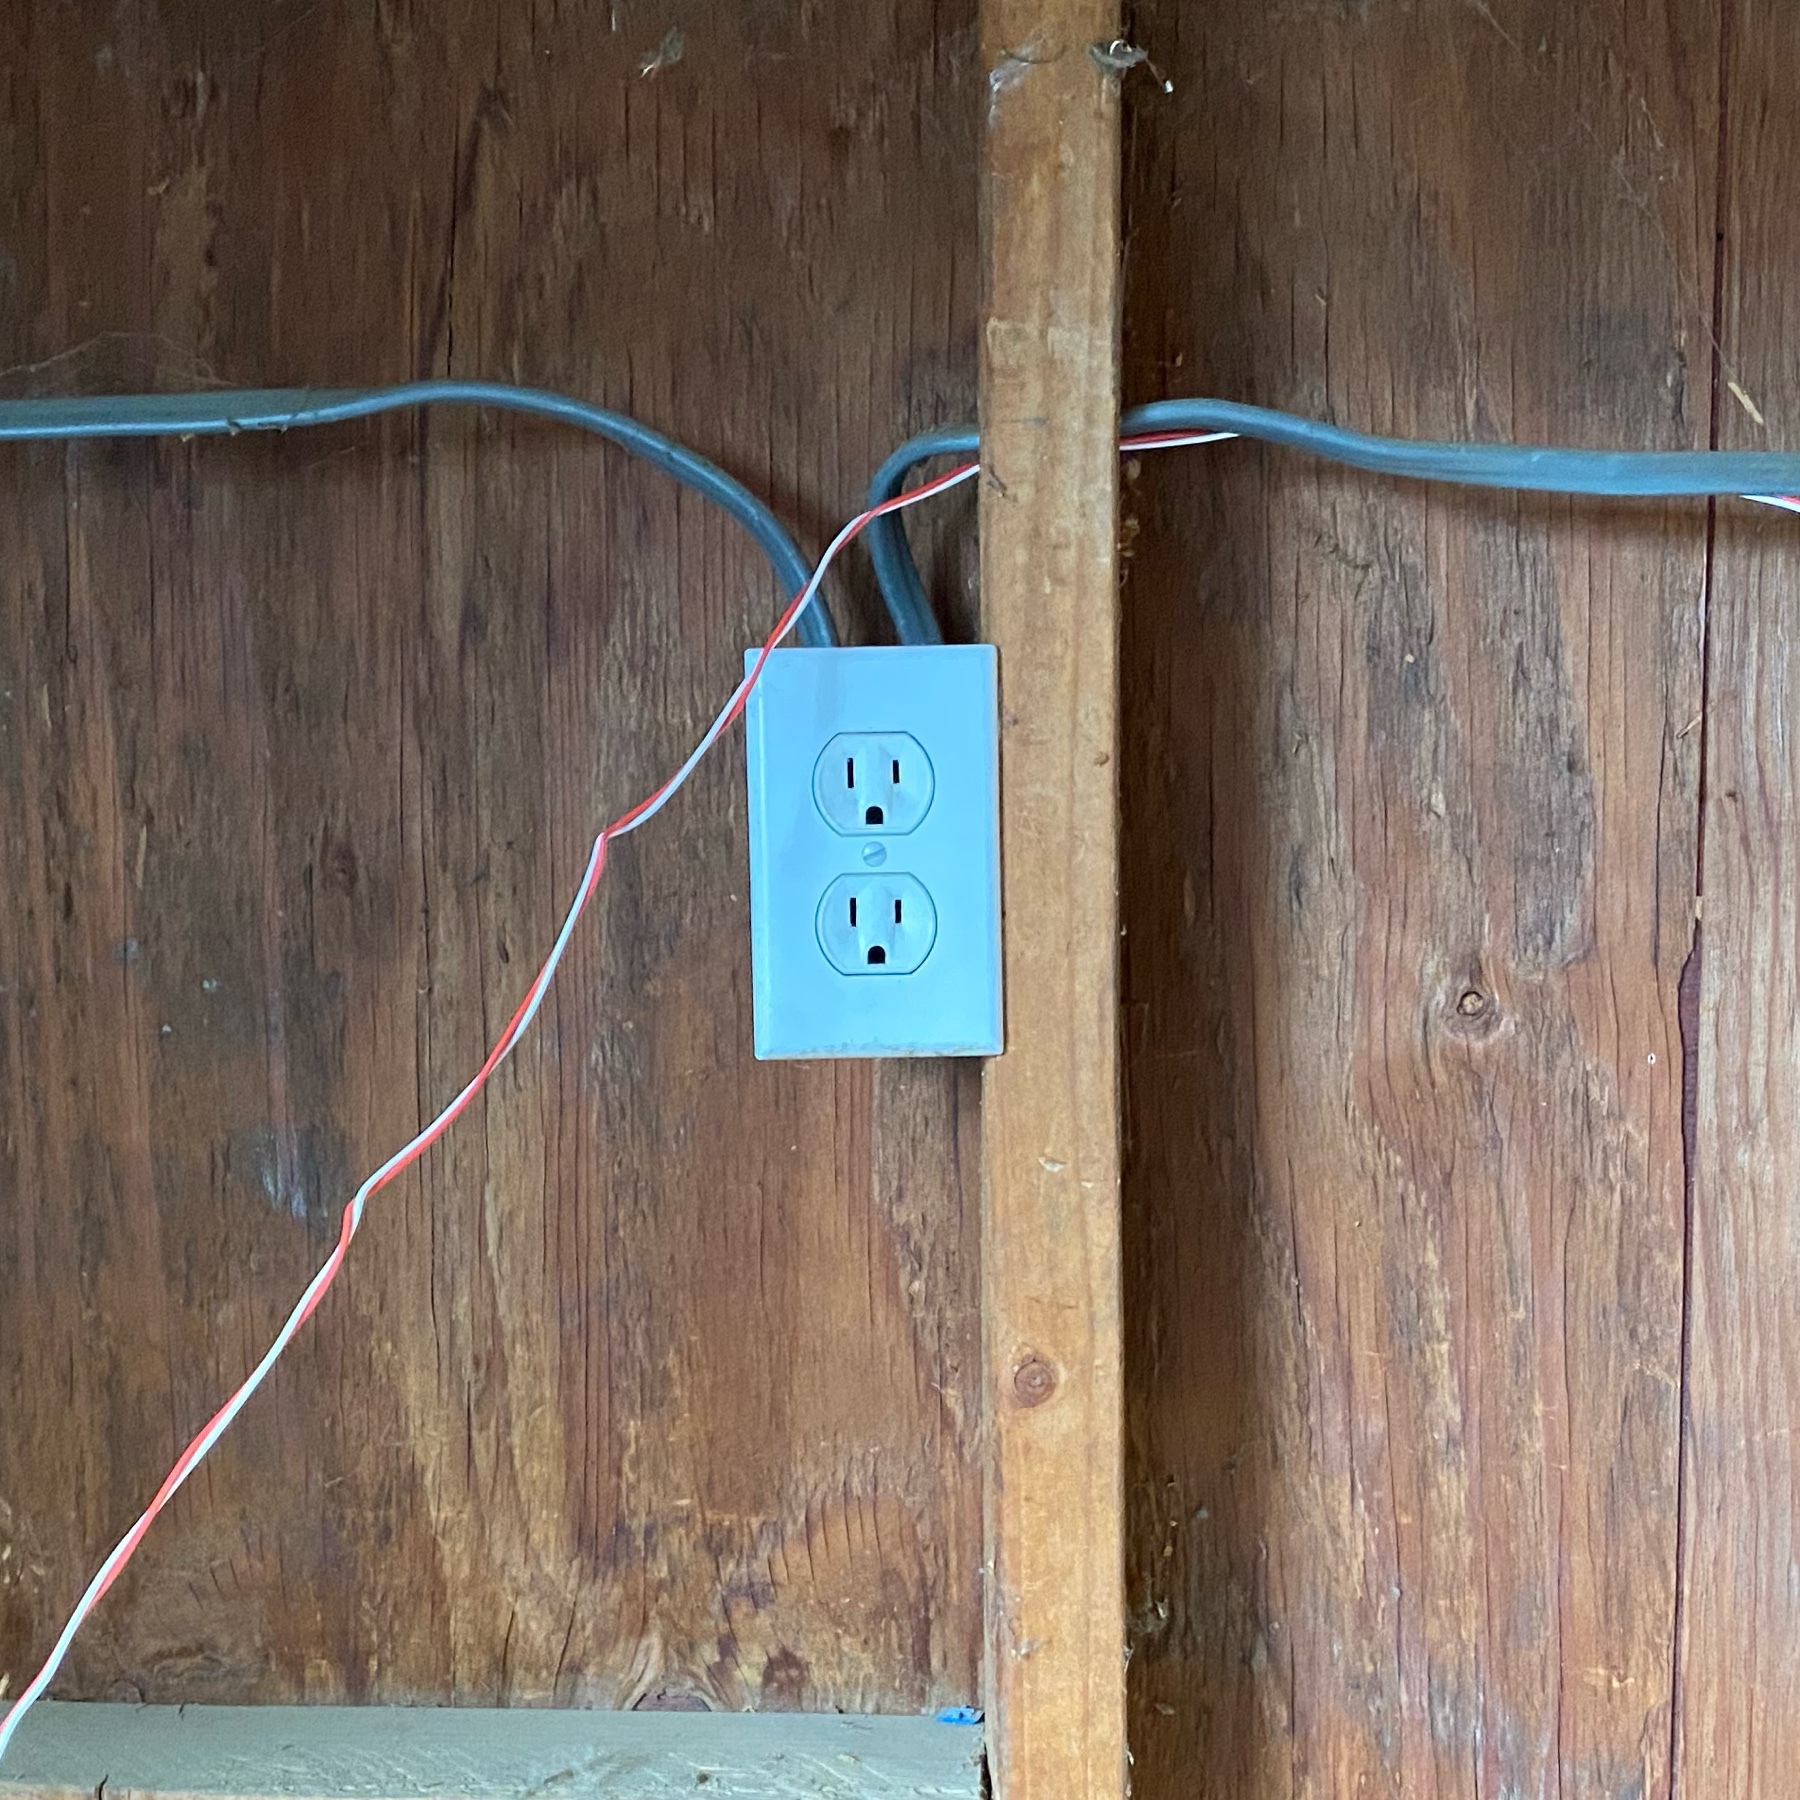 old outlet I removed.